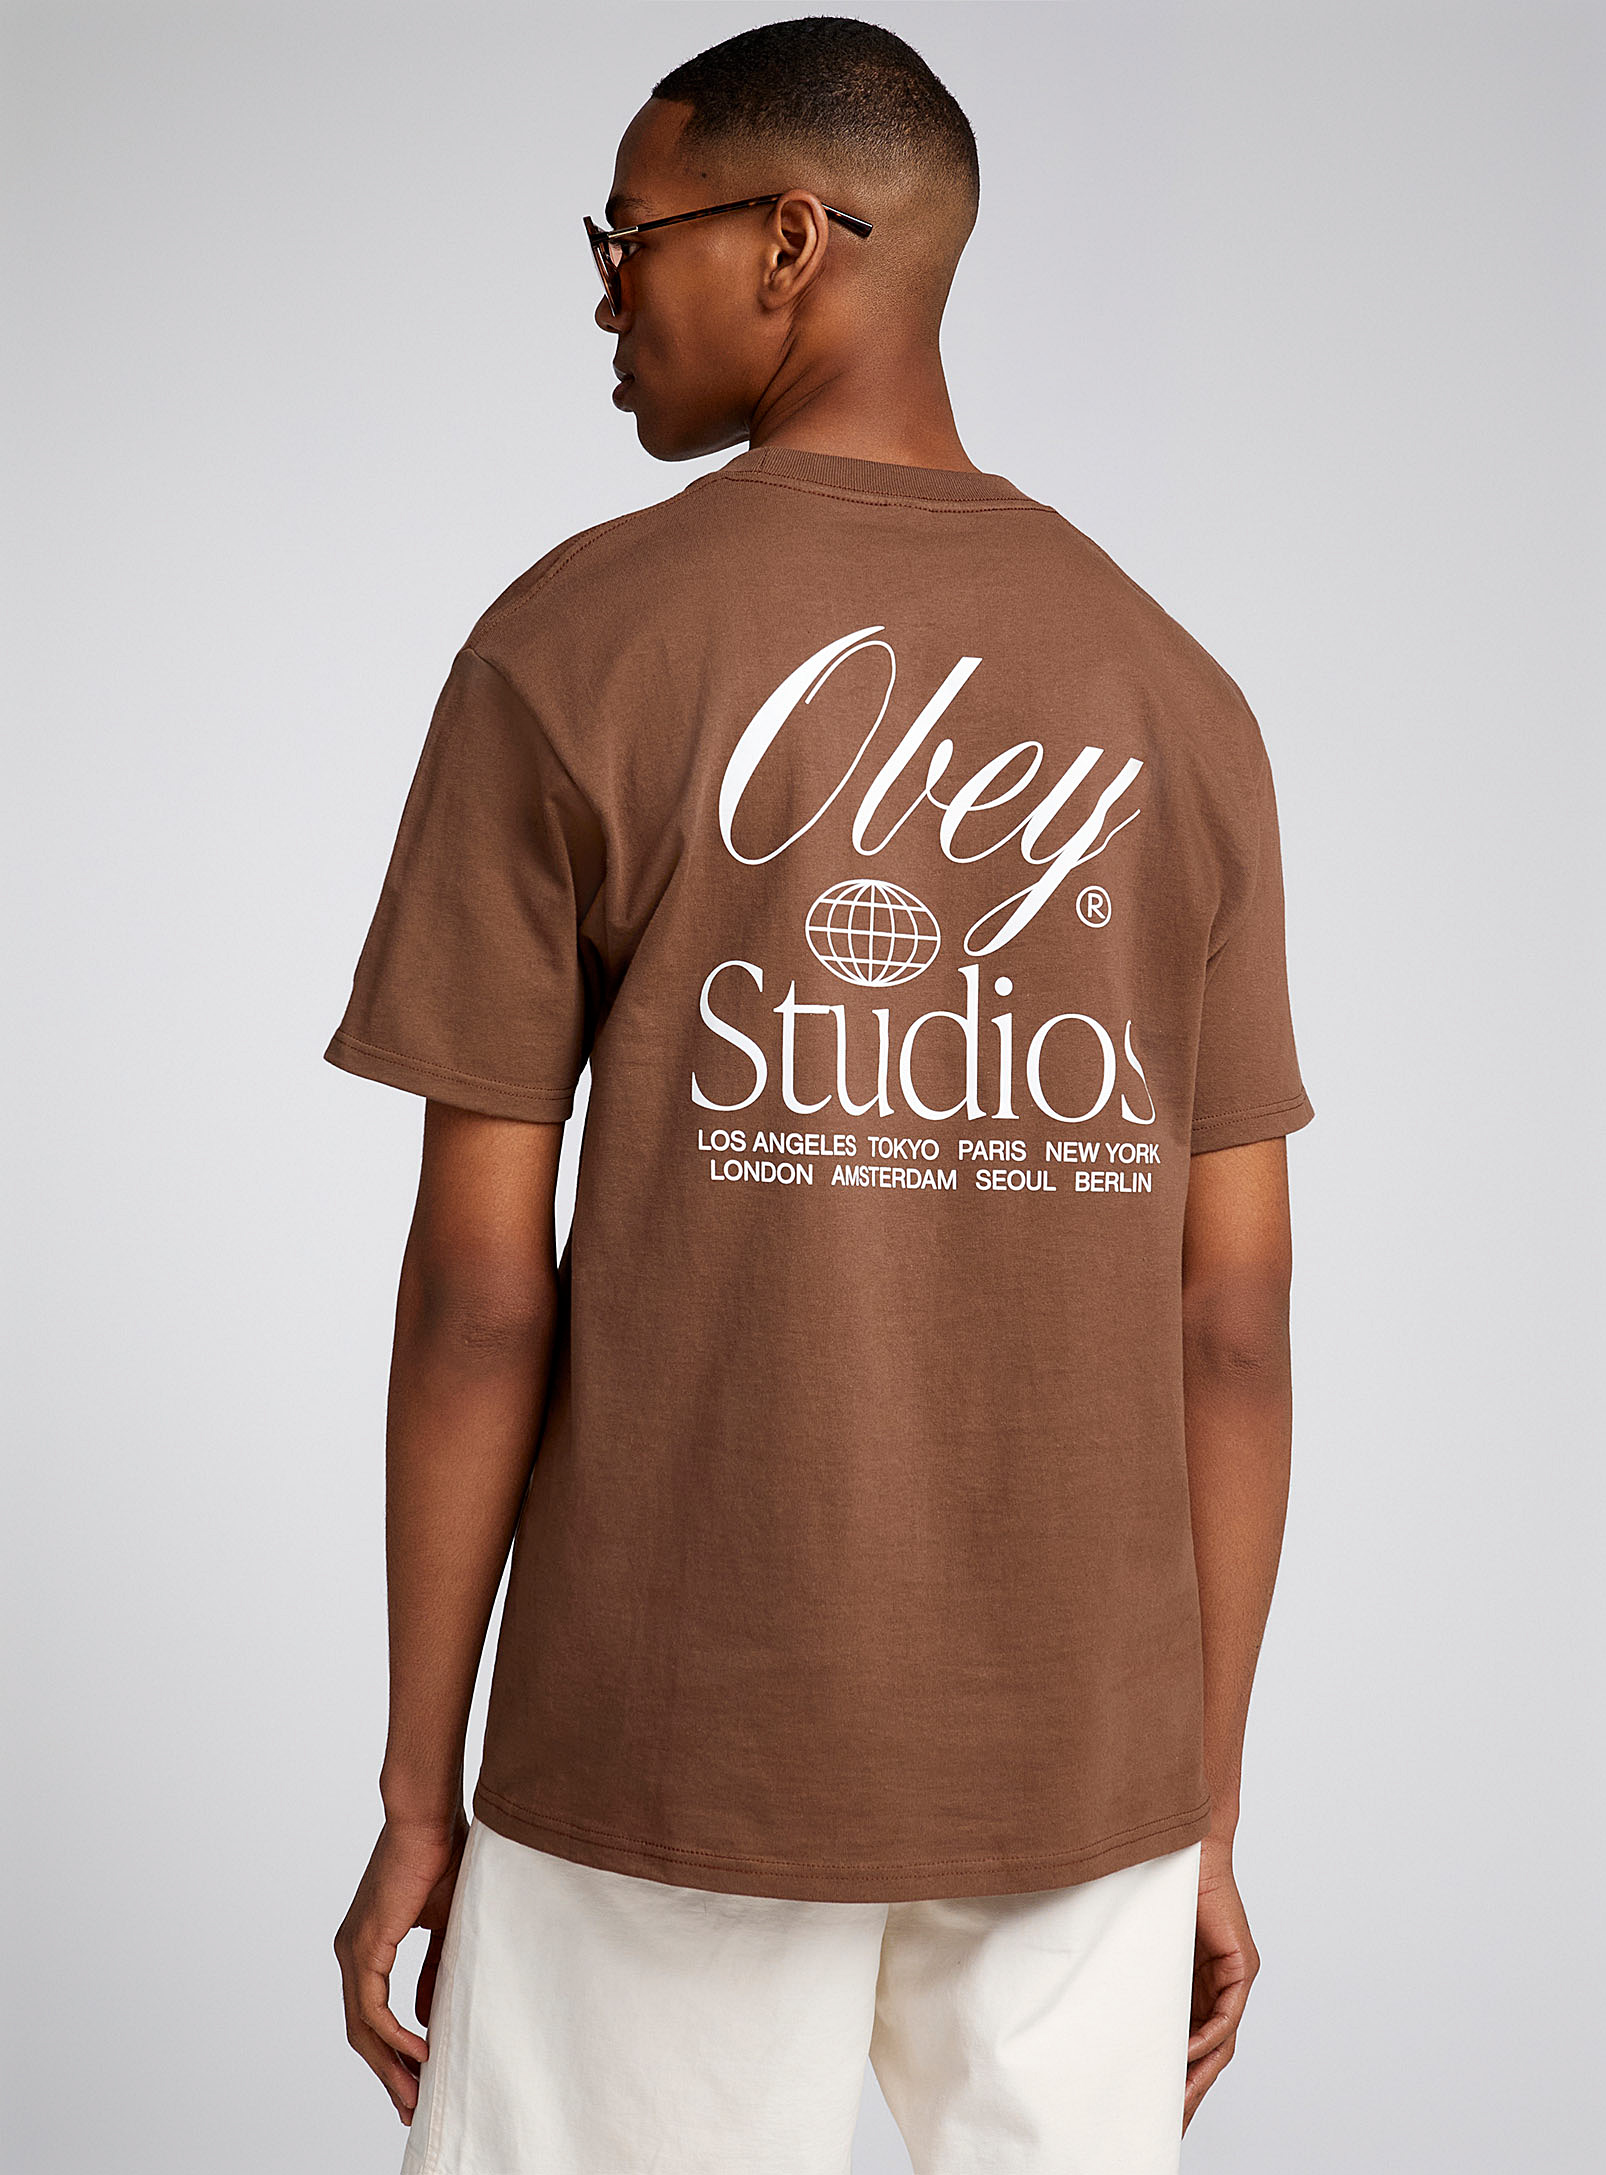 Obey - Men's Studios T-shirt